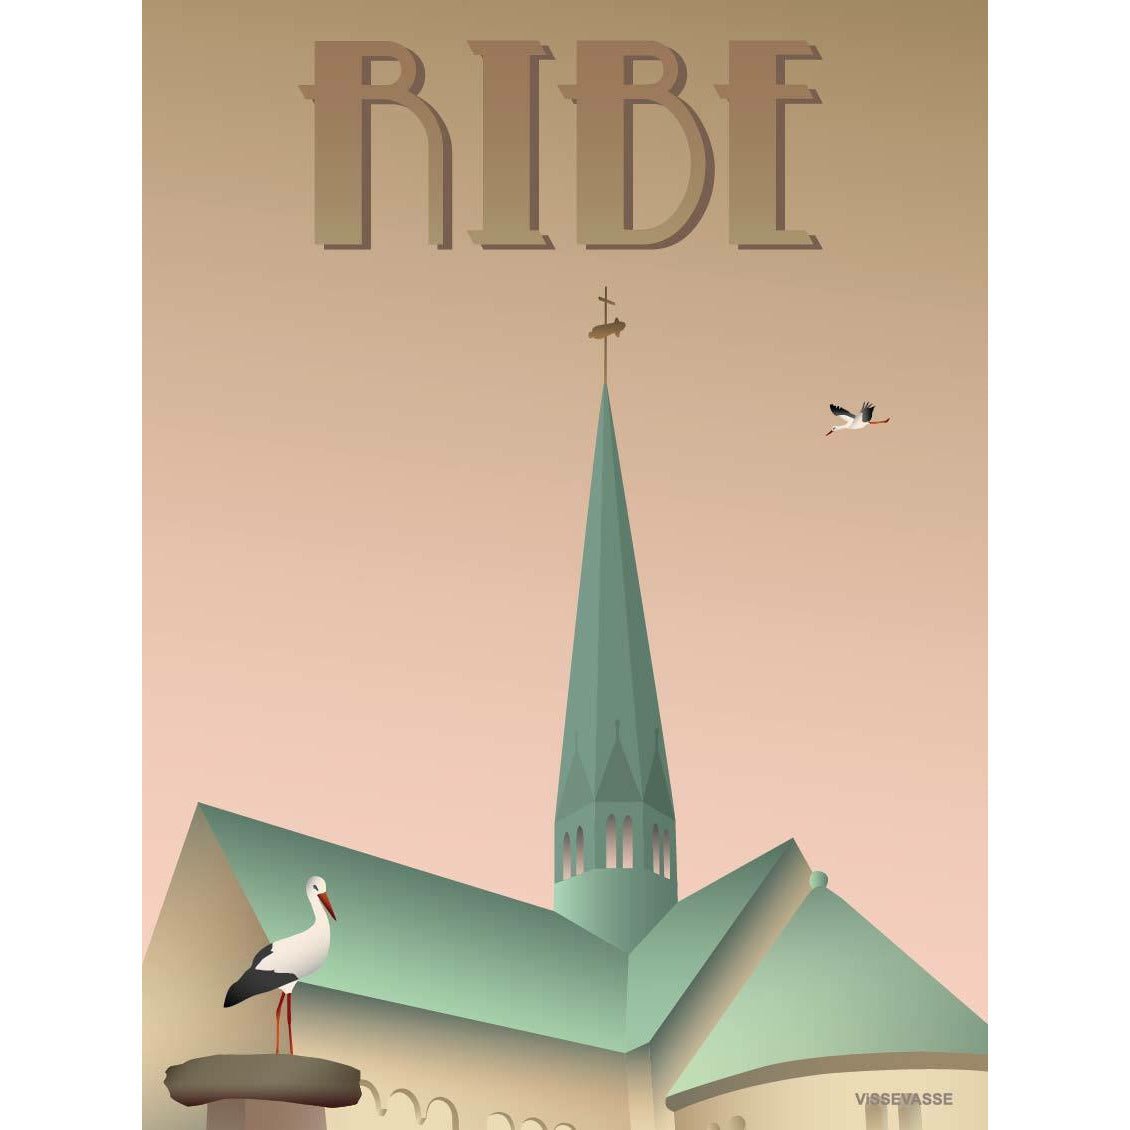 Vissevasse Ribe Storks Poster, 30 X40 Cm